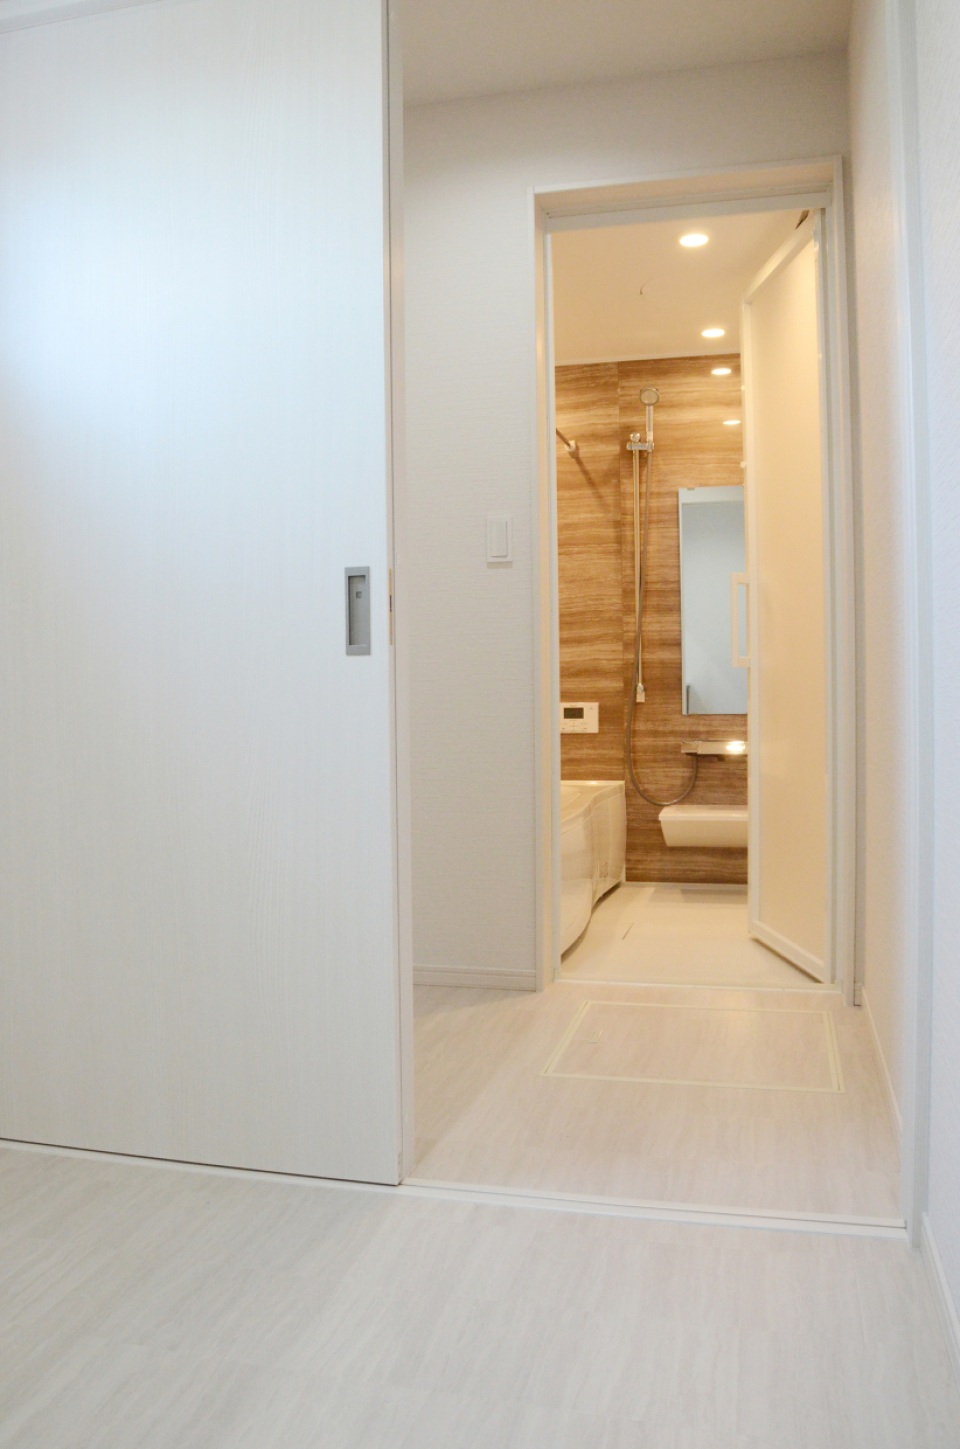 洗面スペースと浴室の間に1.5帖のランドリースペースがある。